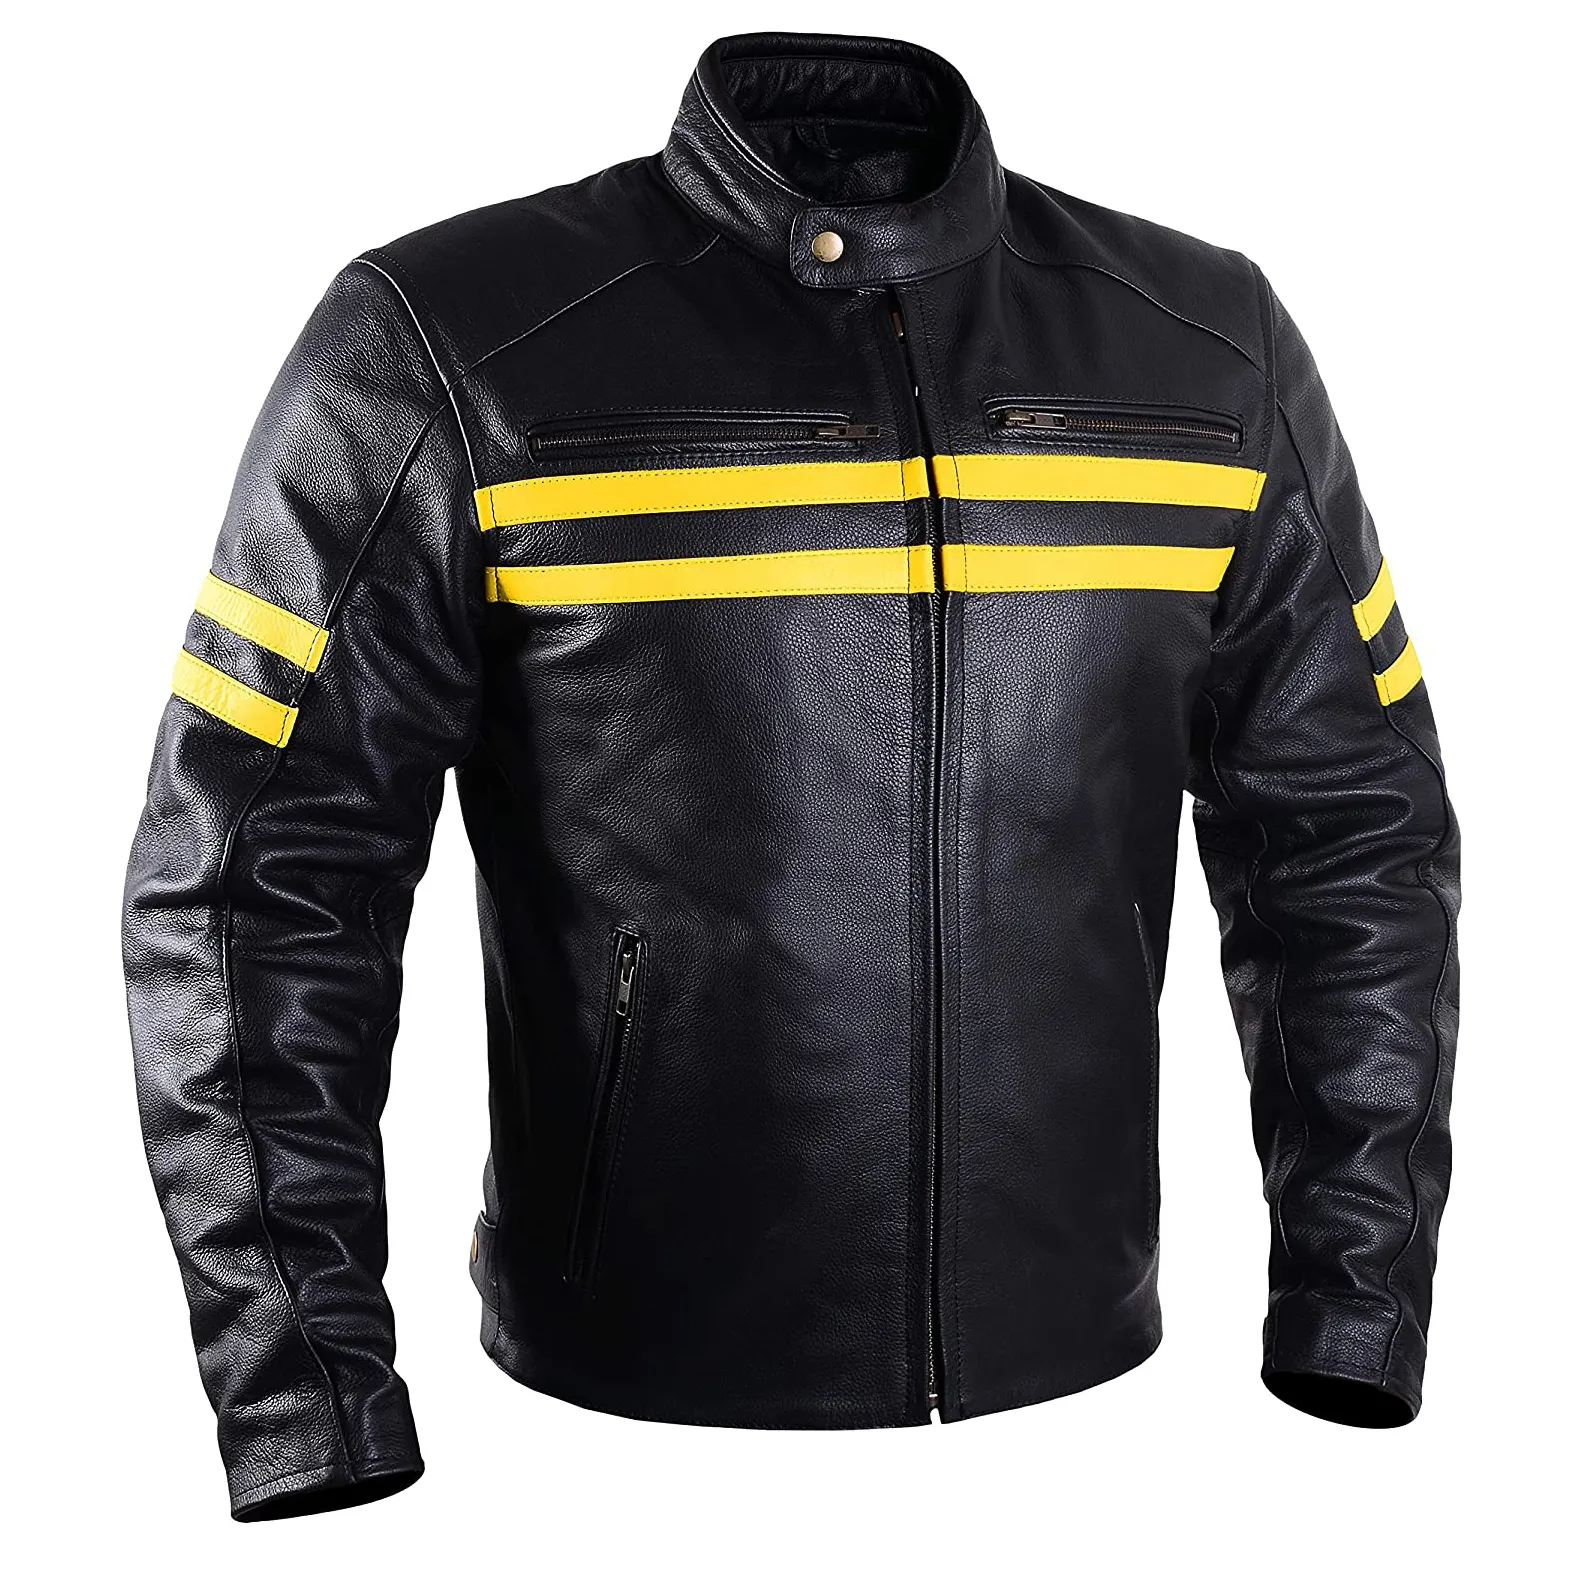 Новая модная мотоциклетная одежда, байкерские куртки с защитой, гоночные куртки для мотоциклистов на заказ